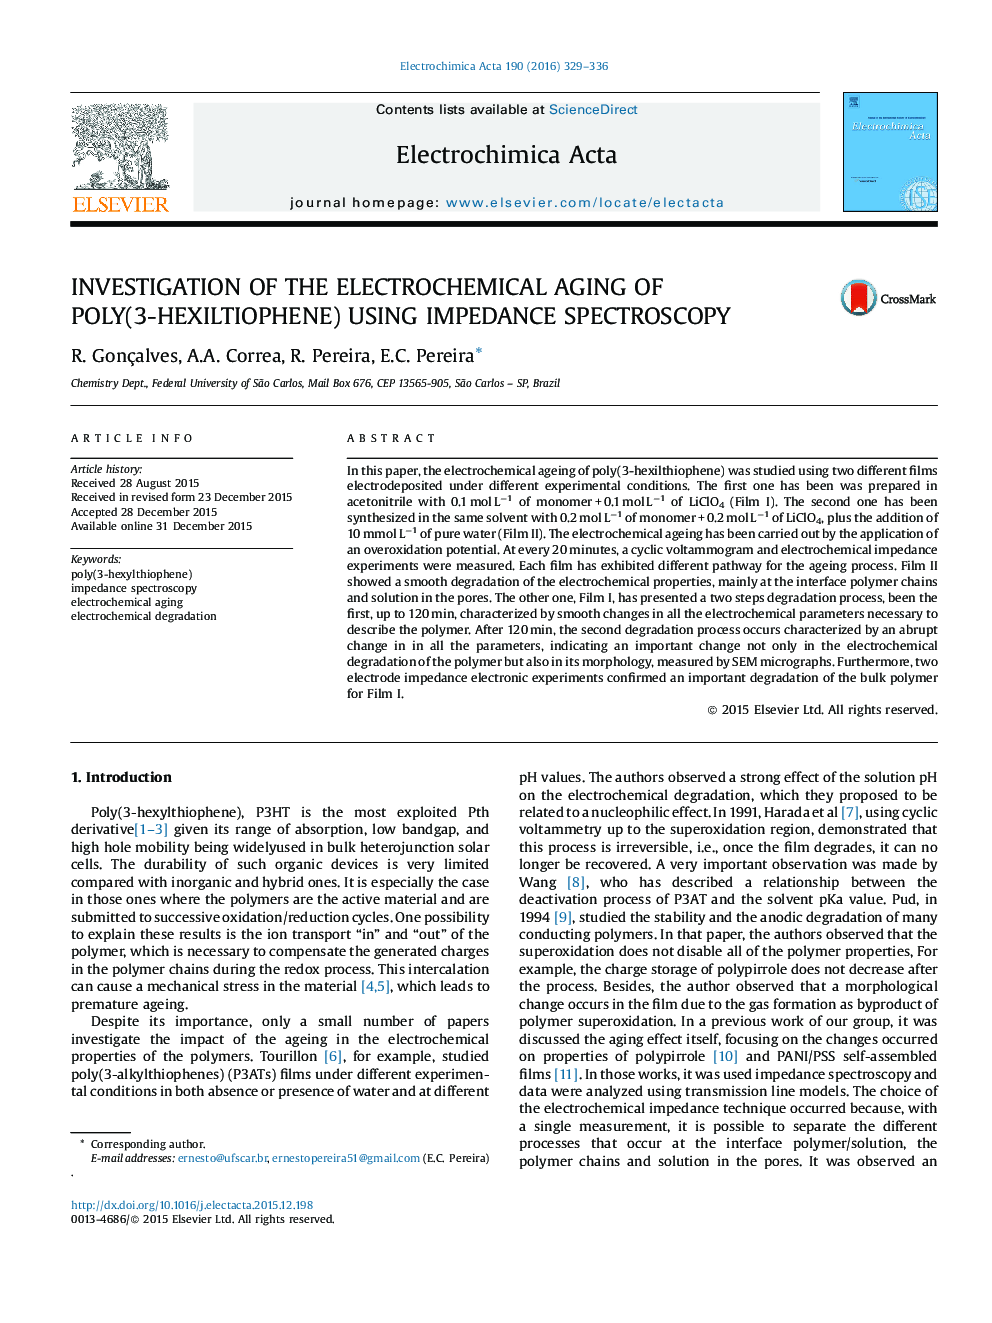 بررسی پیرایش الکتروشیمیایی پلی (3-هگزیلتیوفن) با استفاده از اسپکتروسکوپ ایمپدی 